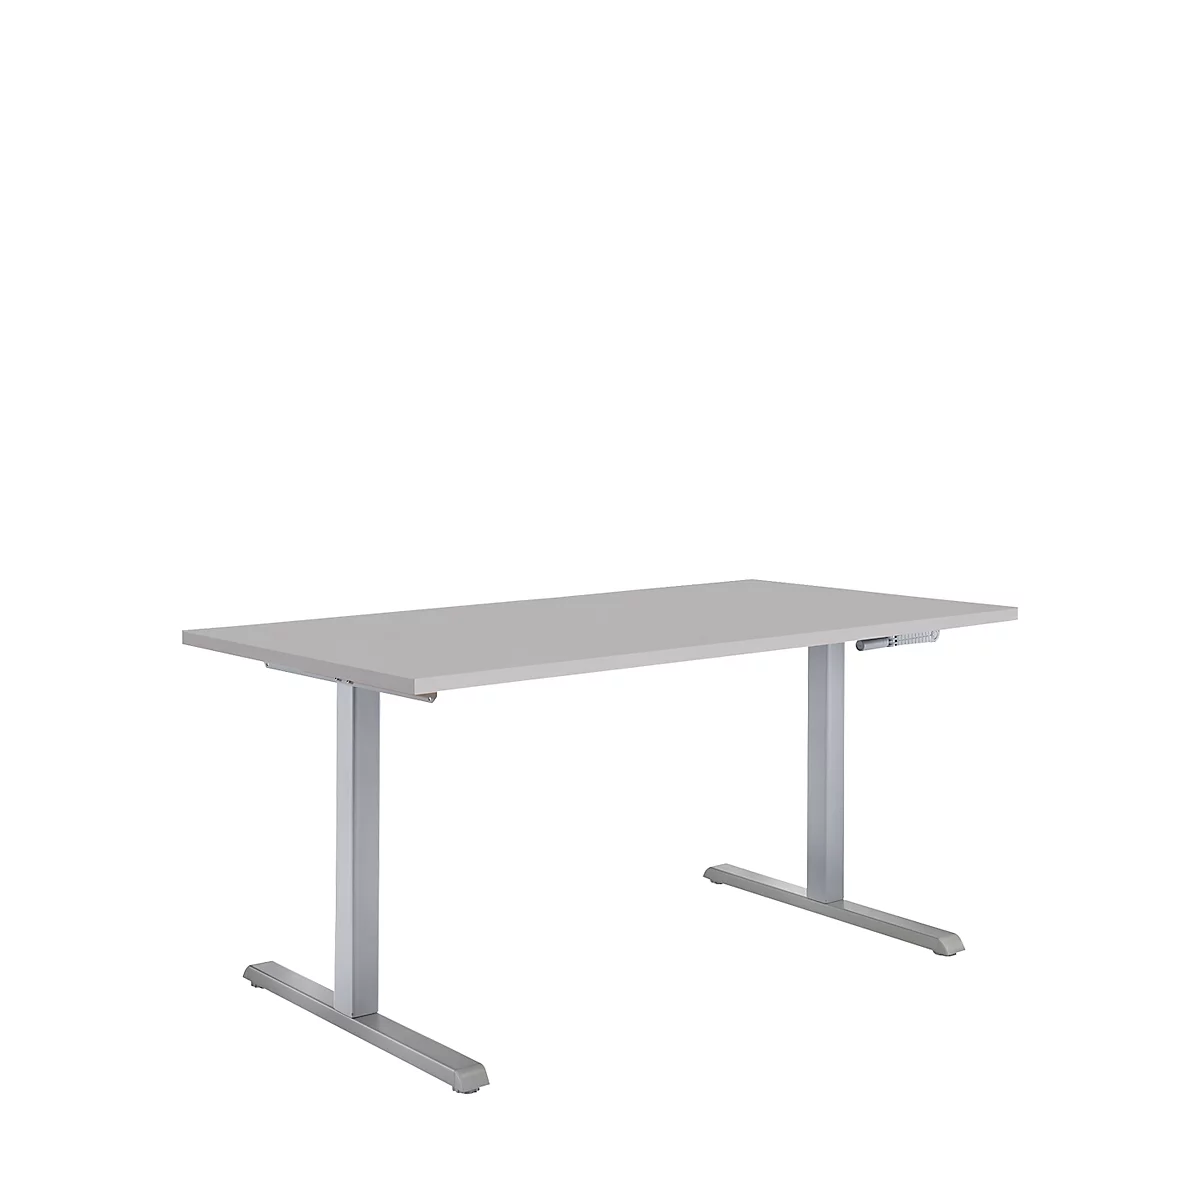 Puesto para trabajo sentado/de pie, mesa de manivela Multiflex, ajustable en altura, An 1200 mm, gris lum./alu. bl.